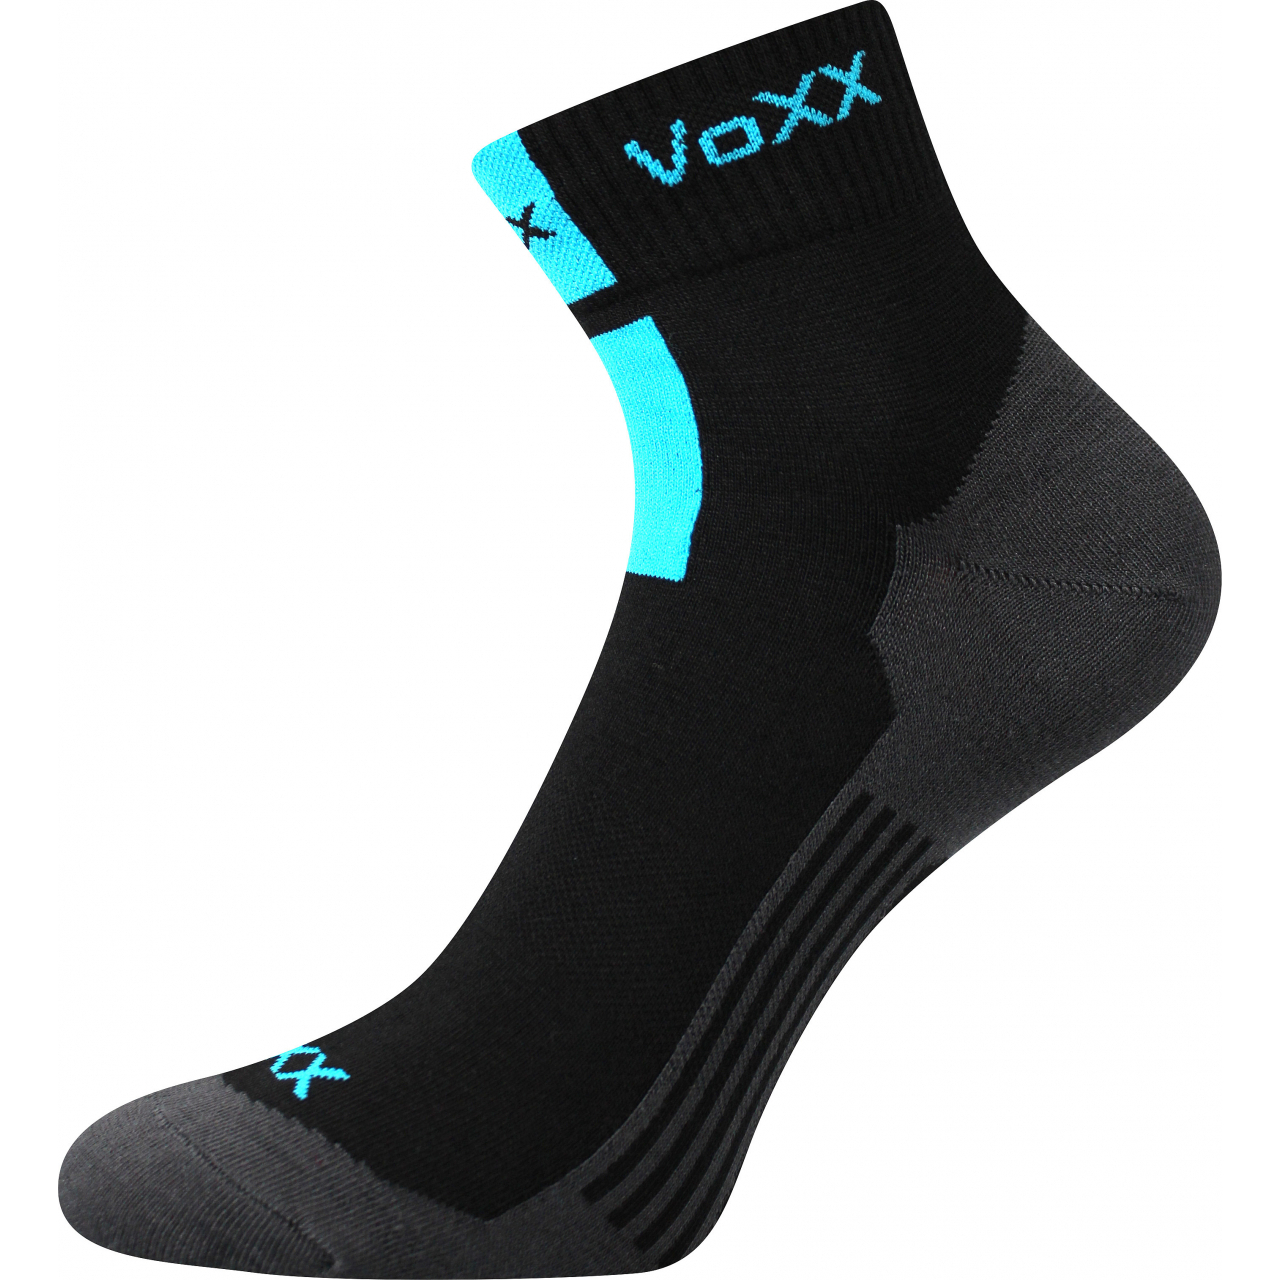 Ponožky unisex klasické Voxx Mostan silproX - černé, 35-38